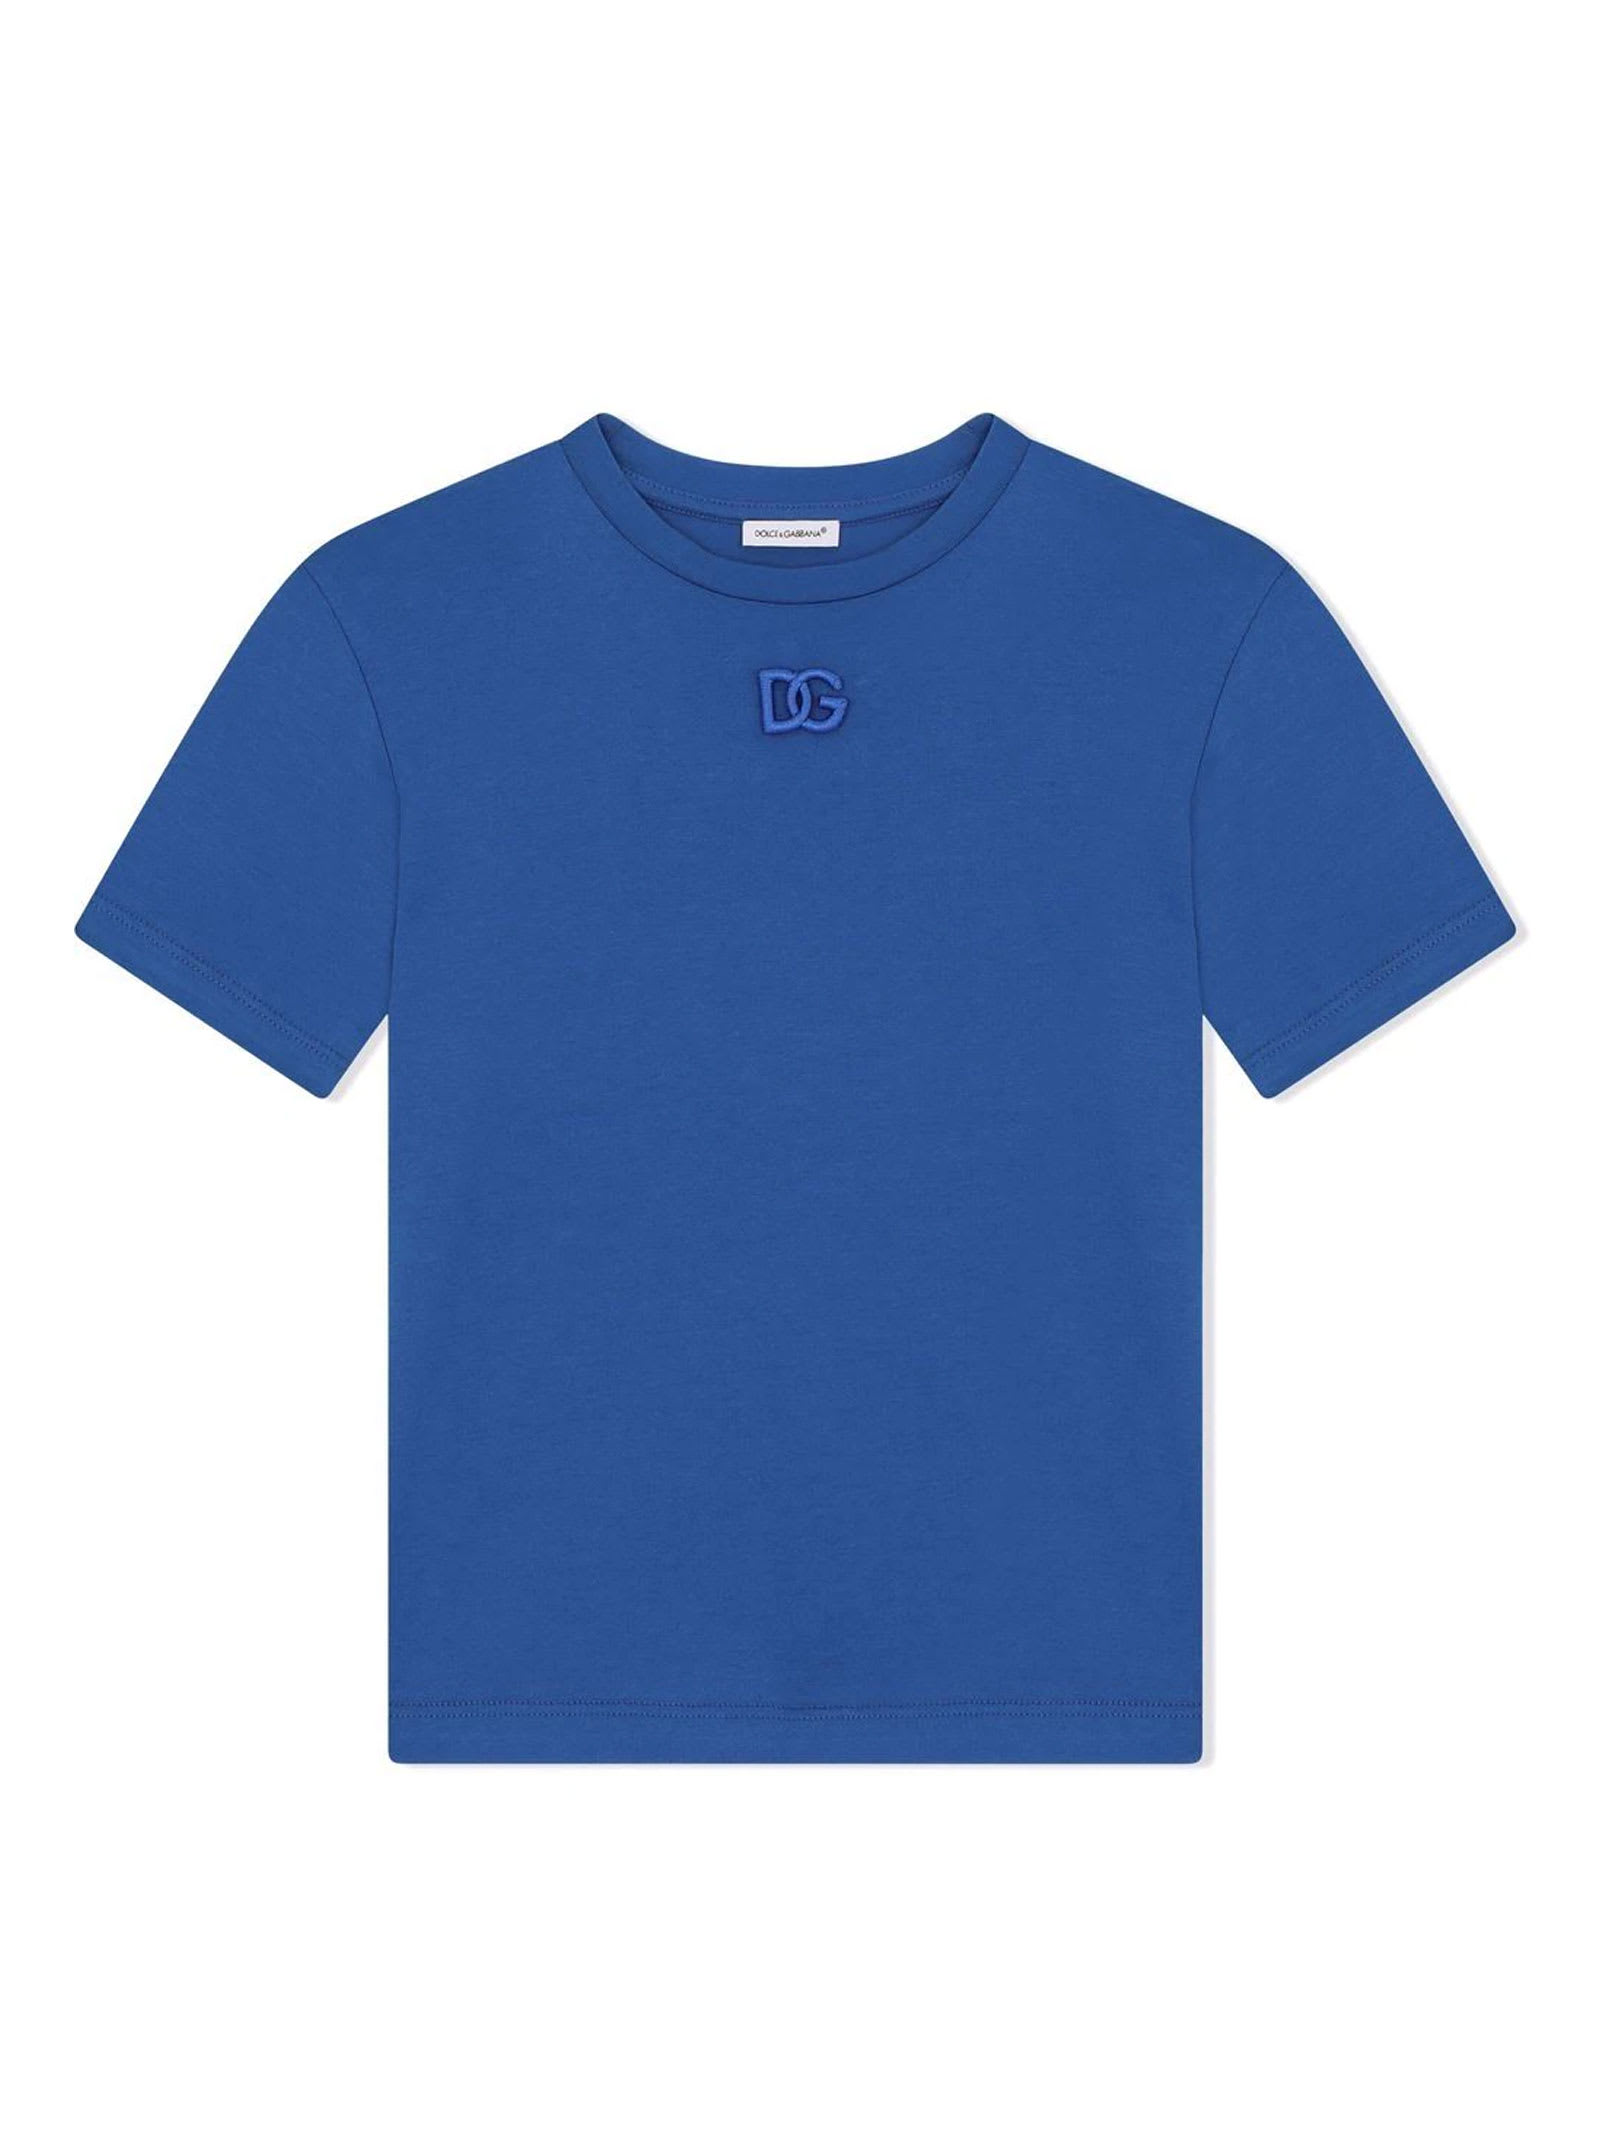 Dolce & Gabbana Blue T-shirt Dolce & gabbana Kids